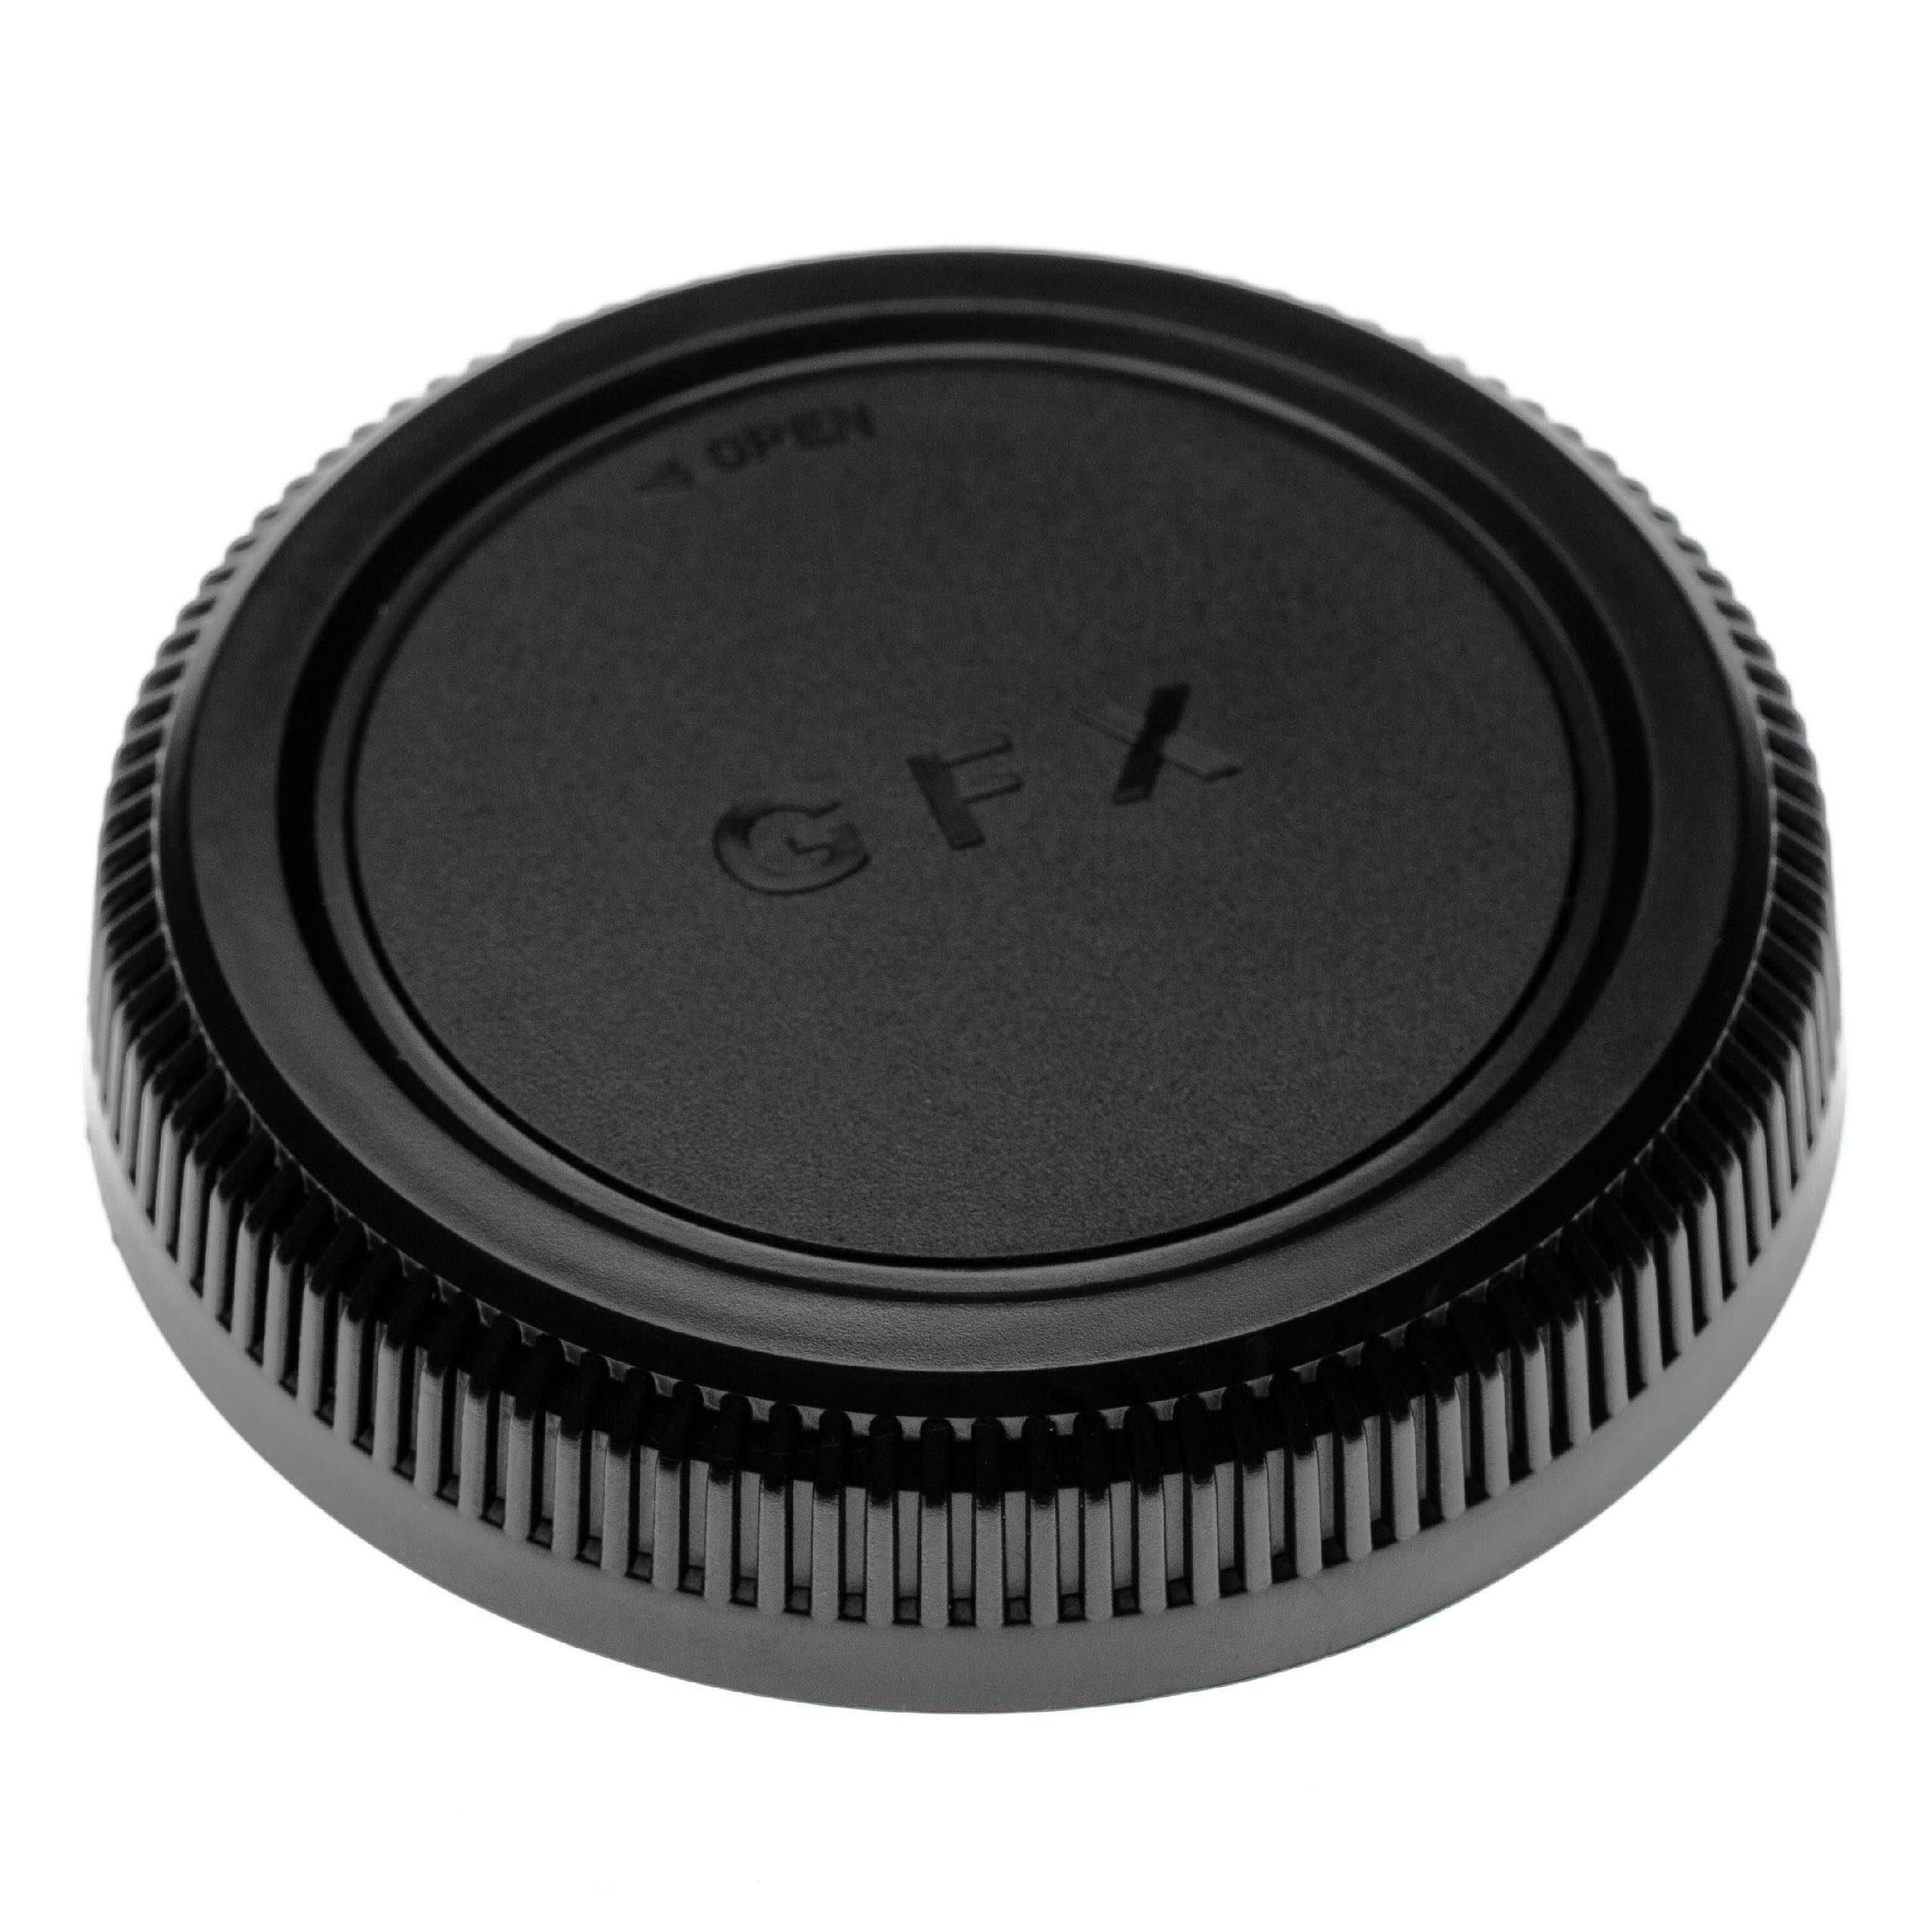  Objektiv-Rückdeckel als Ersatz für Fuji / Fujifilm RLCP-002 für mit G - Bajonett - Schwarz